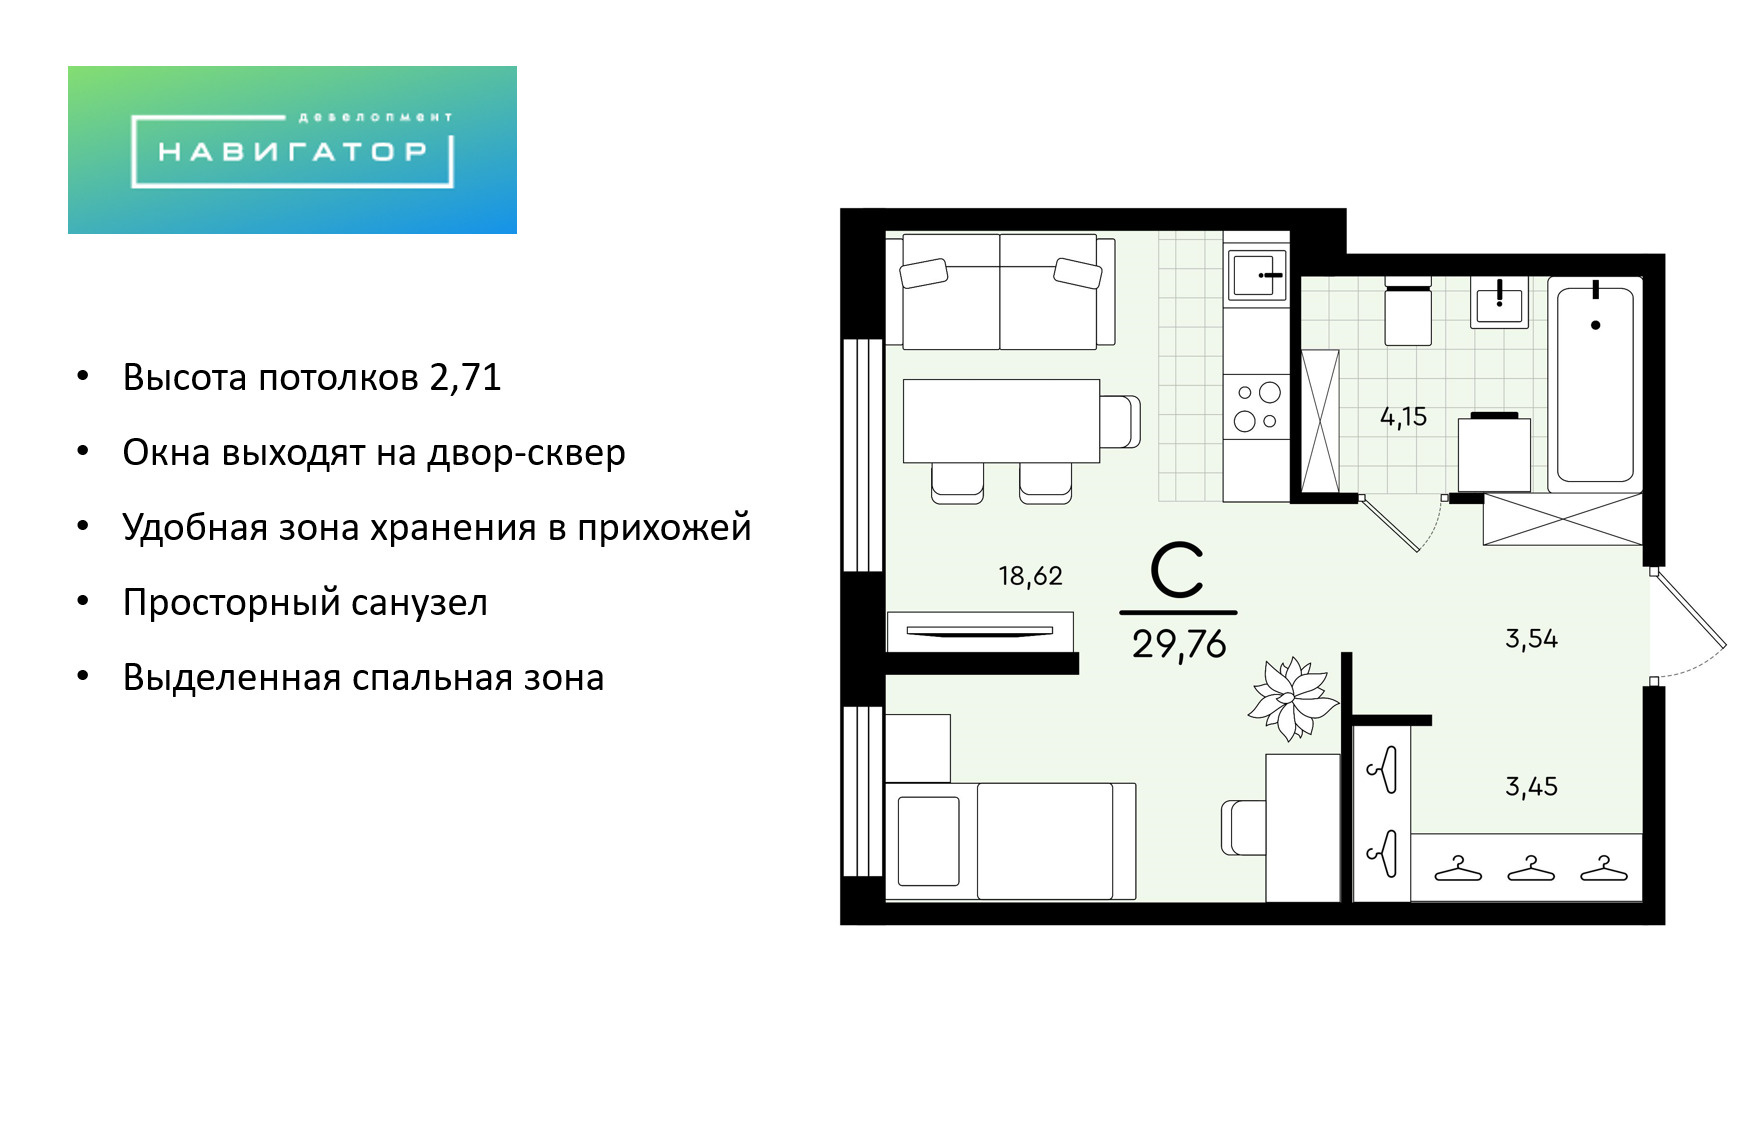 Особенность студии — в организации пространства таким образом, чтобы разделить кухню и спальню. Стоимость студии — 3,55 миллиона рублей